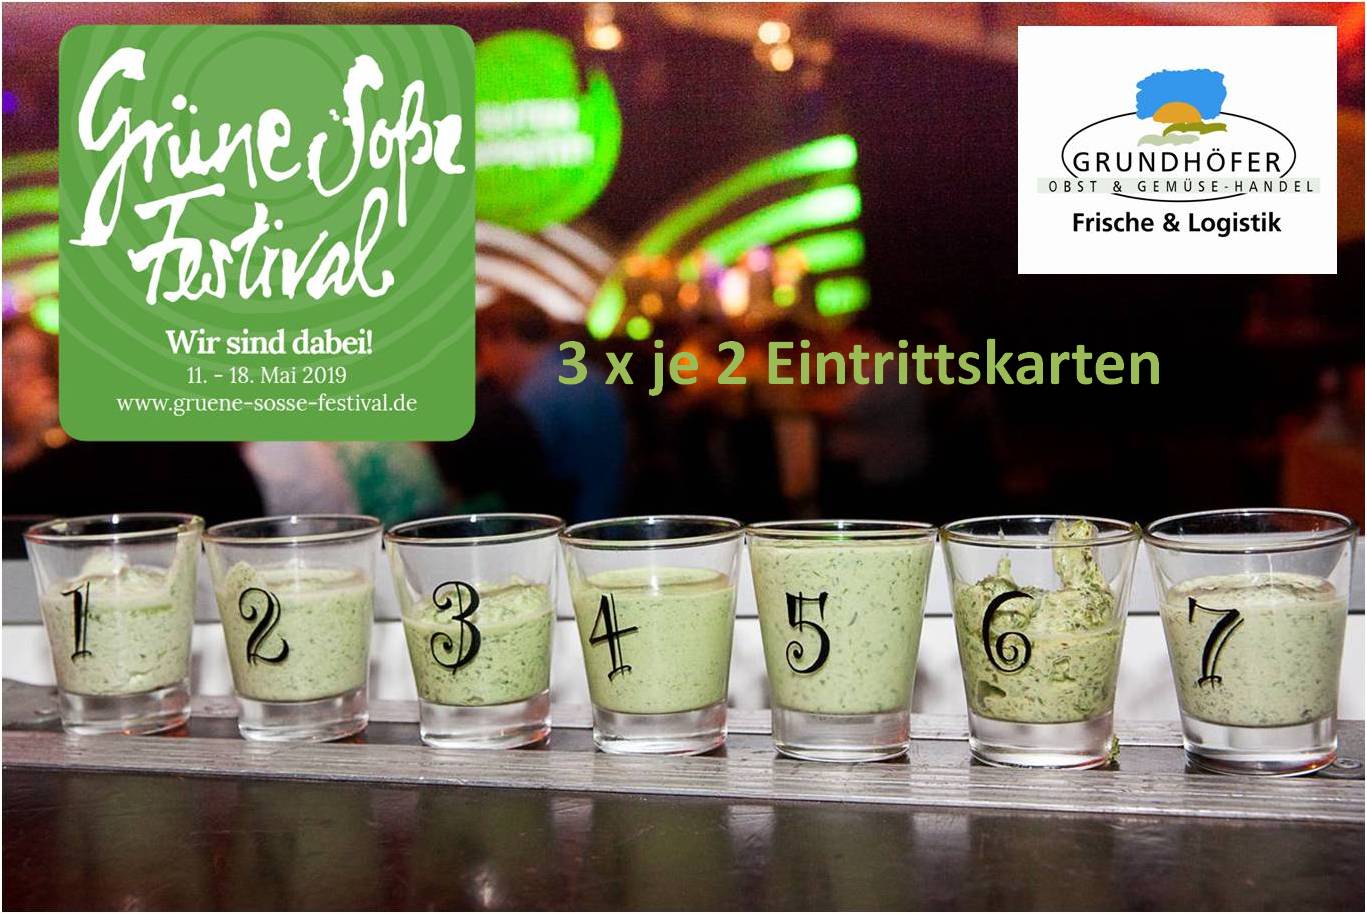 Gläser gefüllt mit "Grünen Soßen", Banner des Grüne Soße Festivals und Logo des Grundhöfer Obst & Gemüse-Handels